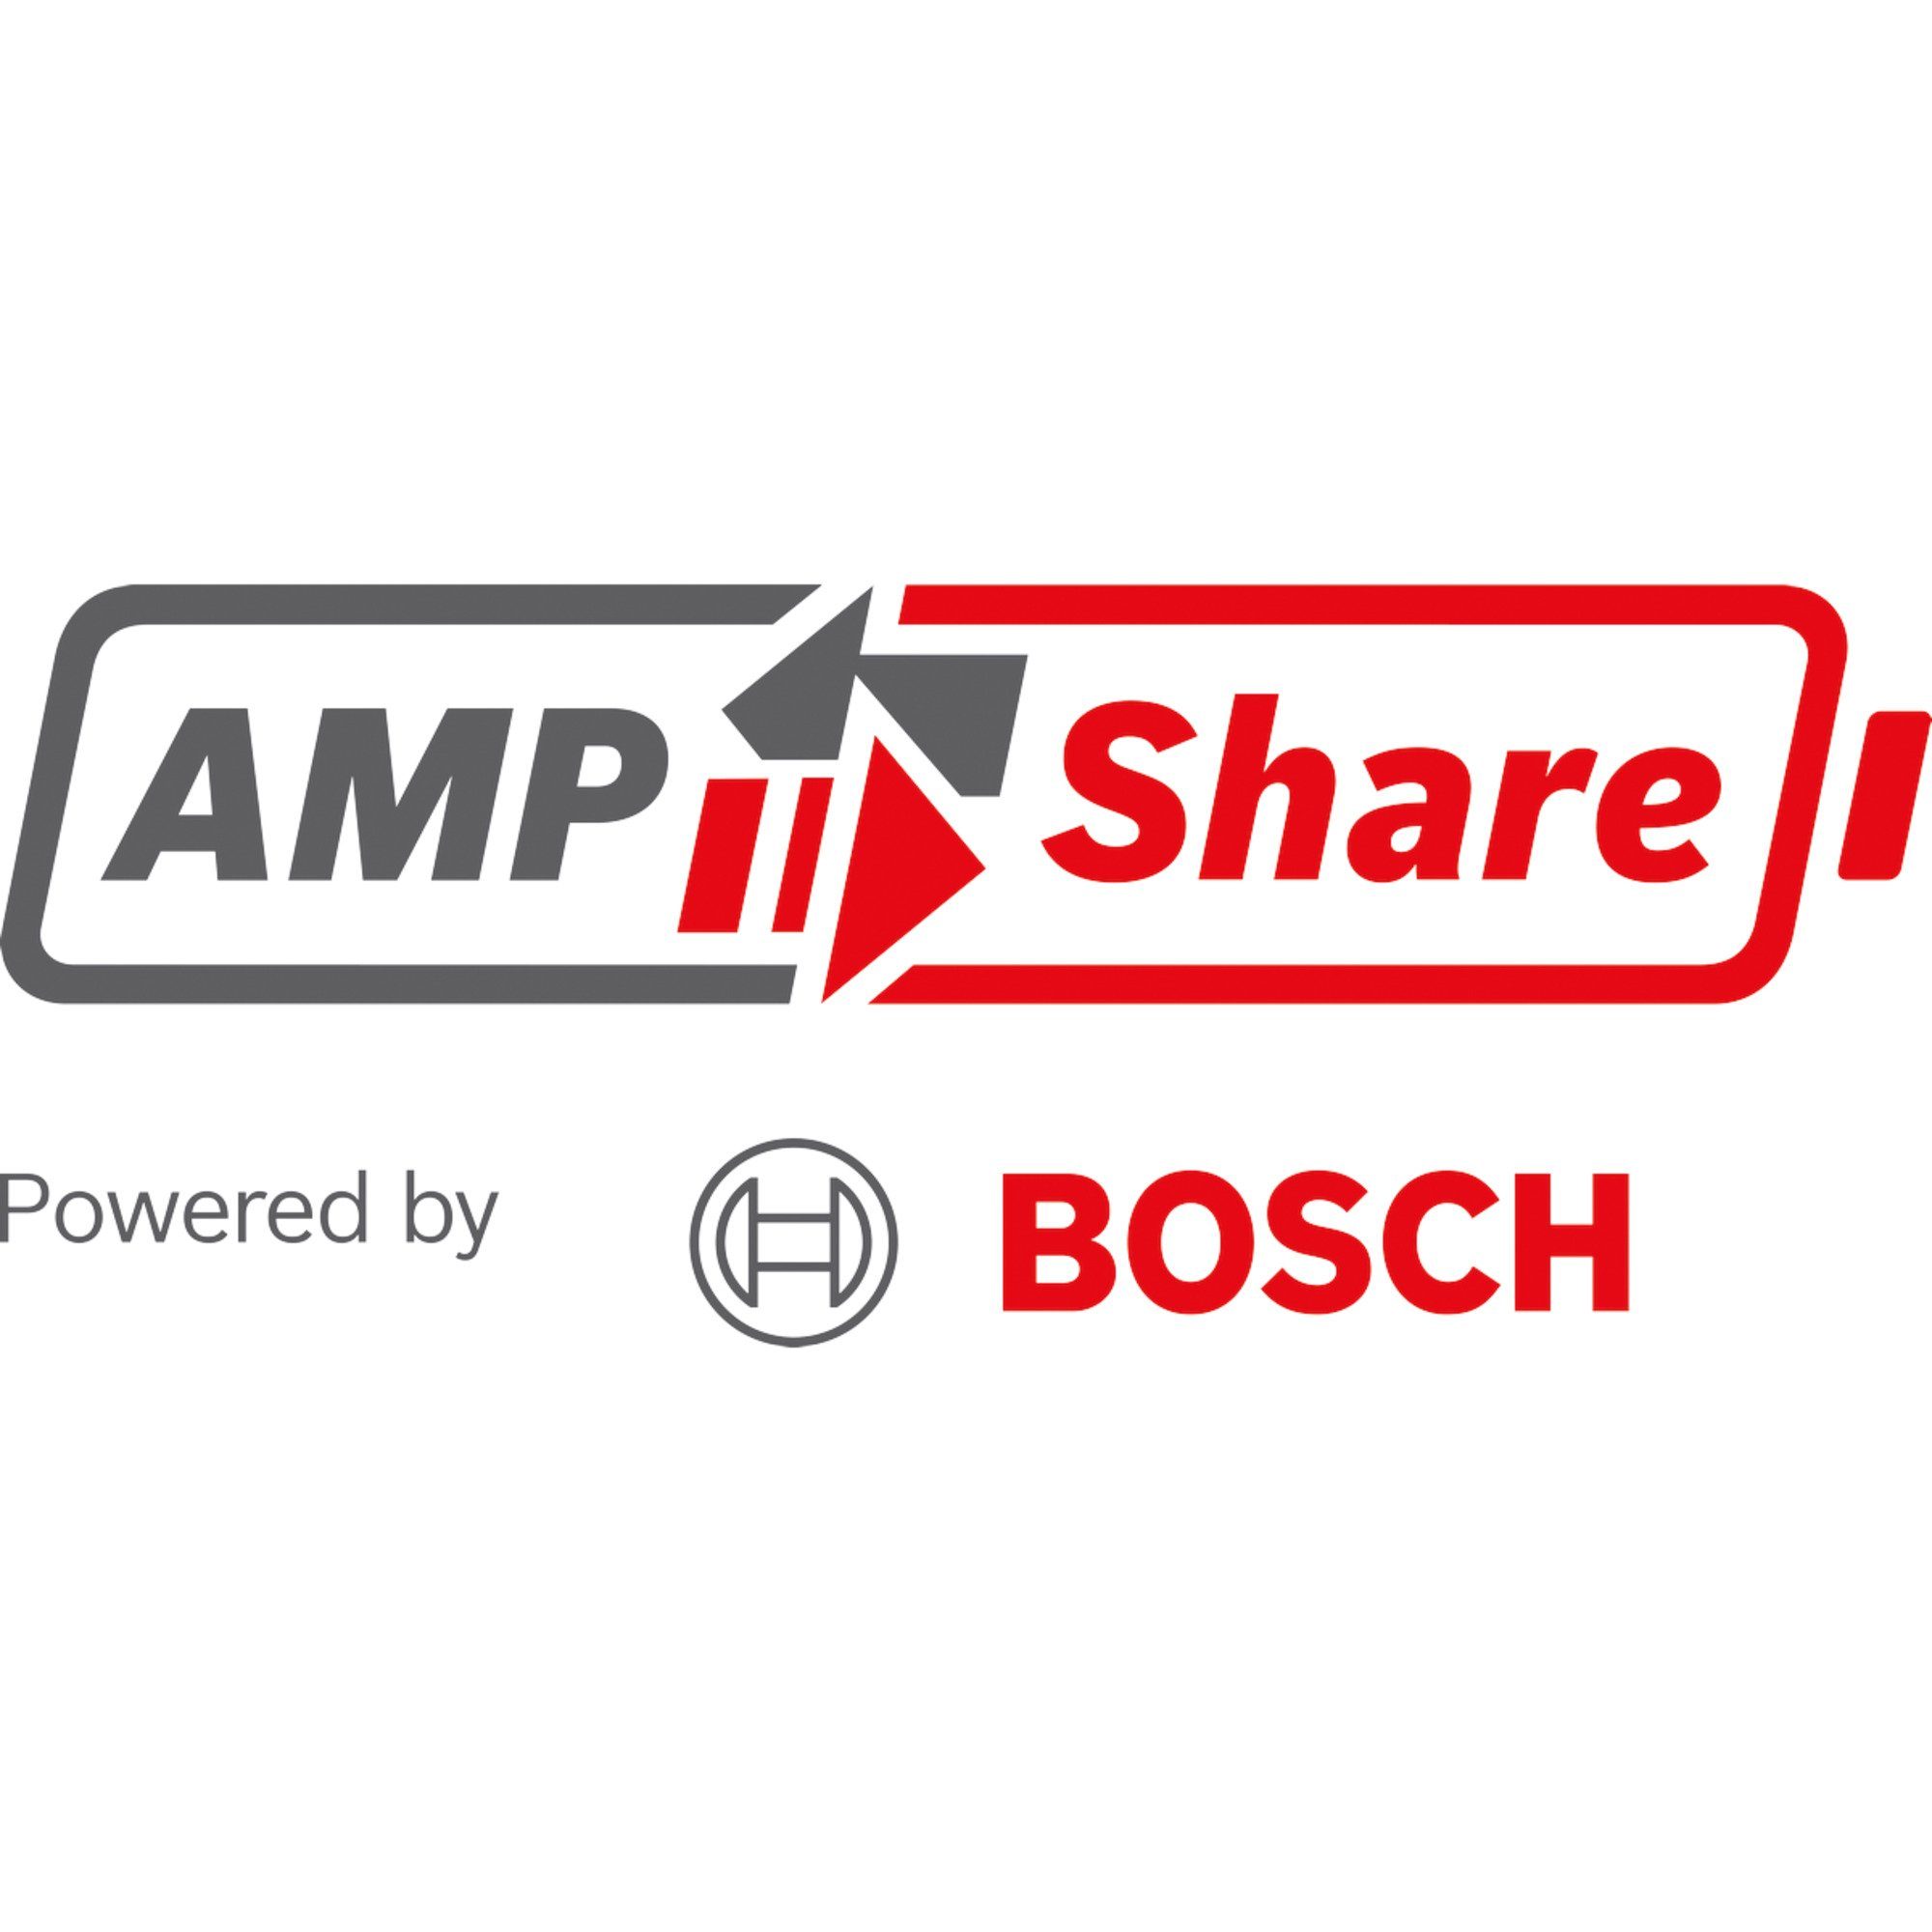 Gehrungssäge BOSCH und Kapp- Akku-Kapp- Gehrungssäge und Professional Bosch